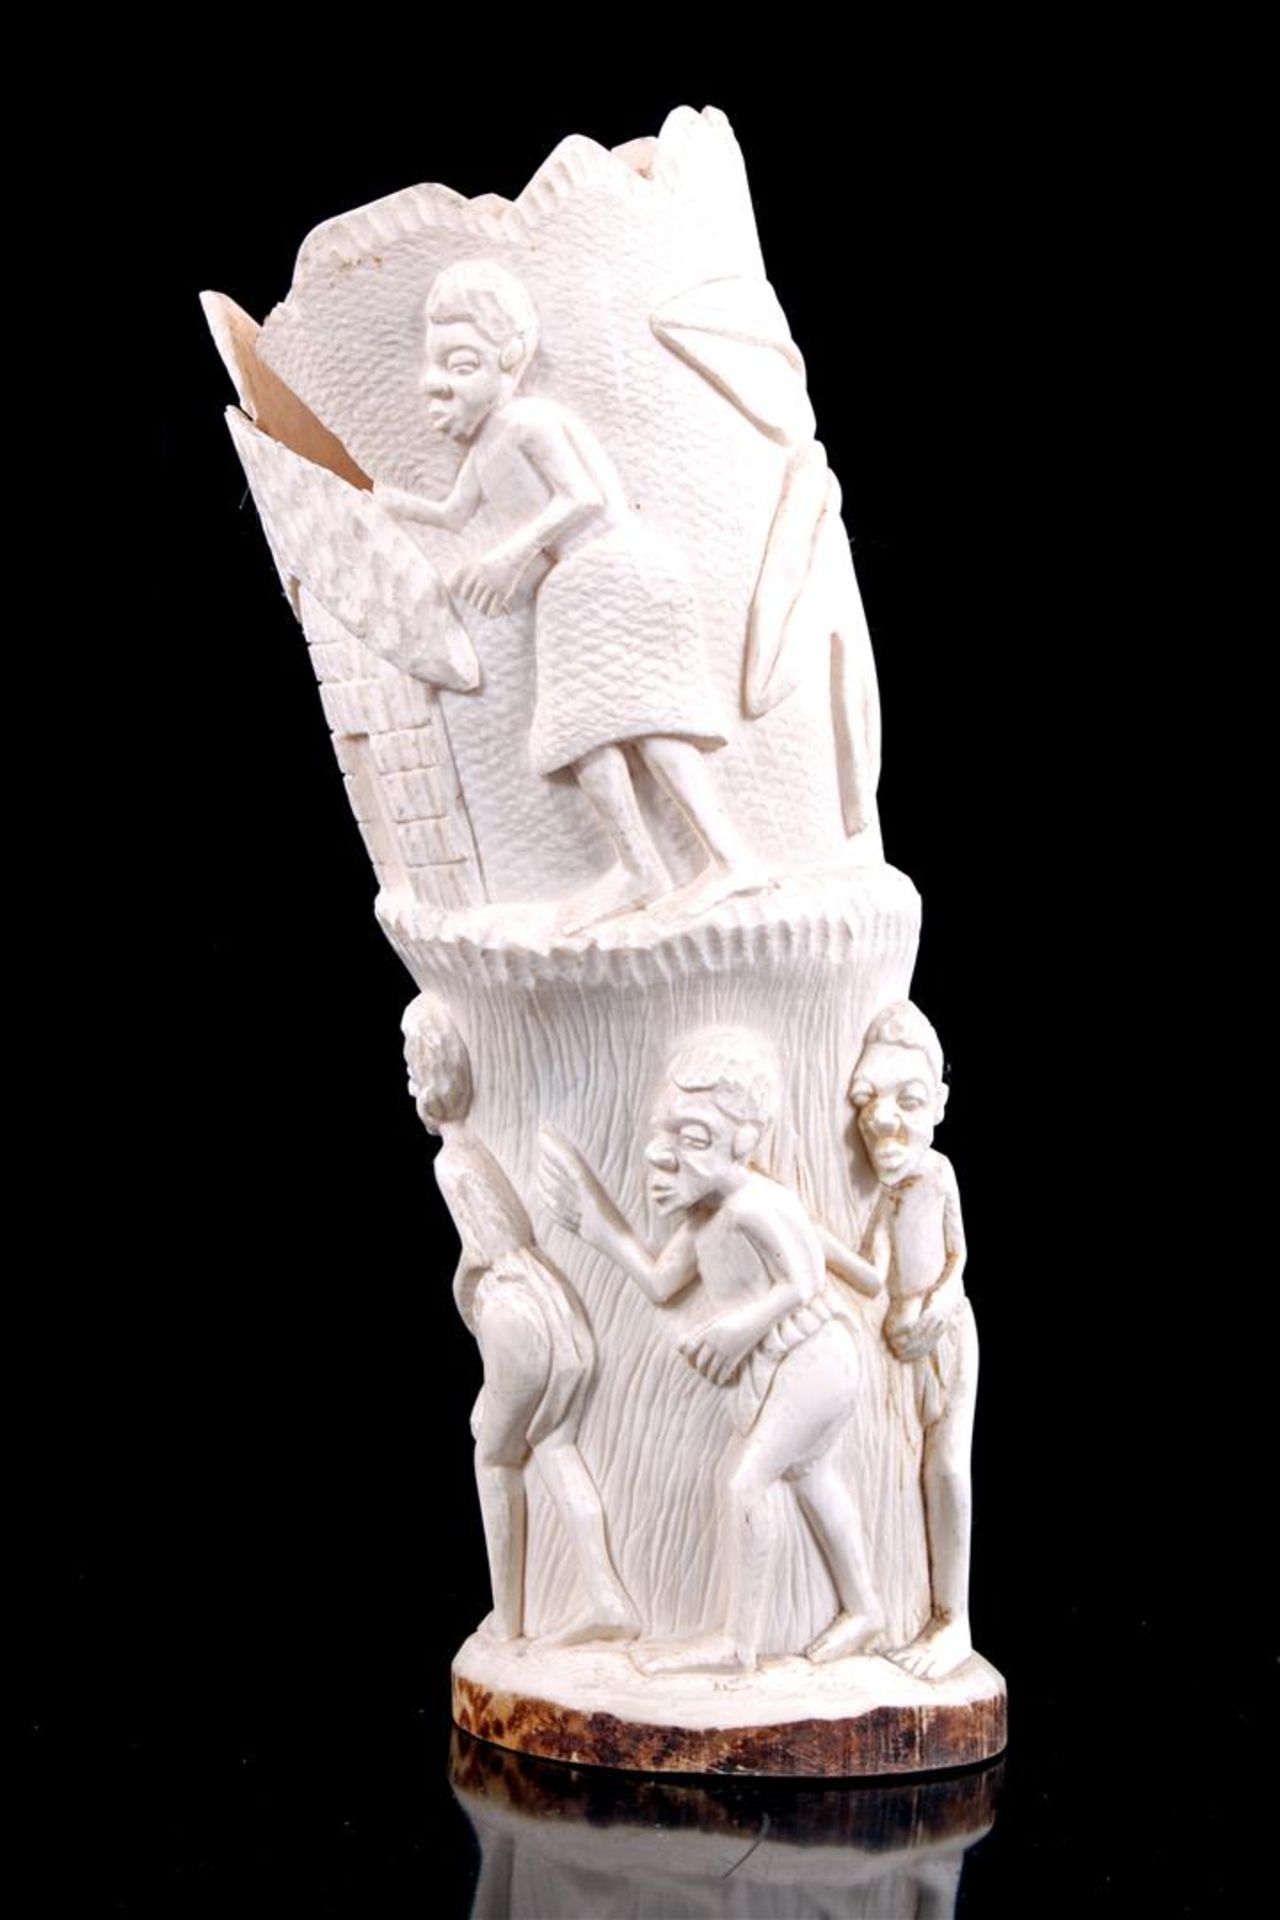 Rijkgestoken ivoren sculptuur met decor van dansende figuren, Afrika ca. 1900, 35 cm hoog, 1555 gram - Bild 2 aus 3